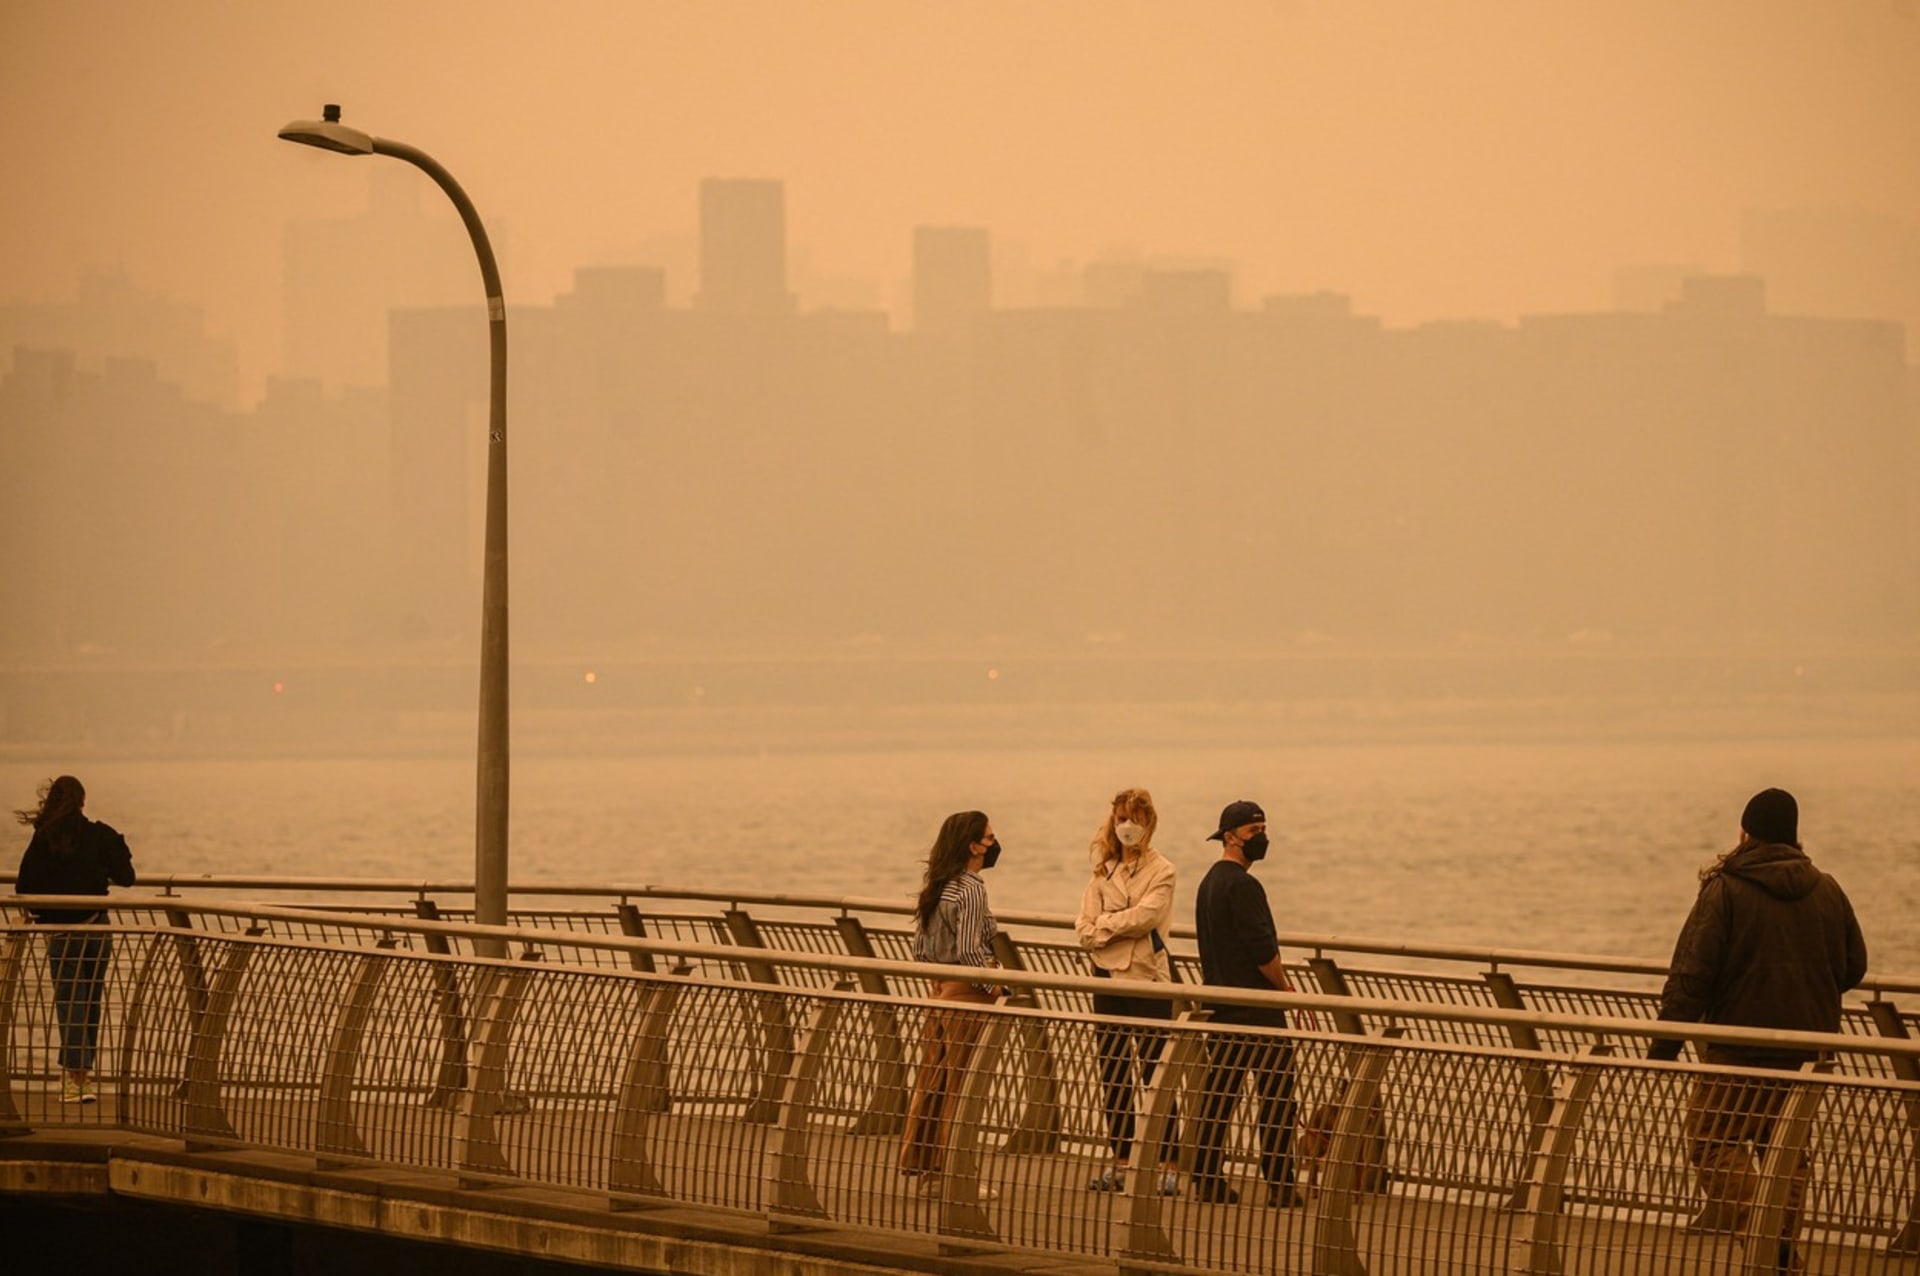 Obyvatelé New Yorku musí kvůli smogu z kanadských požárů dbát na vyšší opatrnost. Na místě jsou třeba roušky a respirátory, ideálně pak vůbec nevycházet ven.